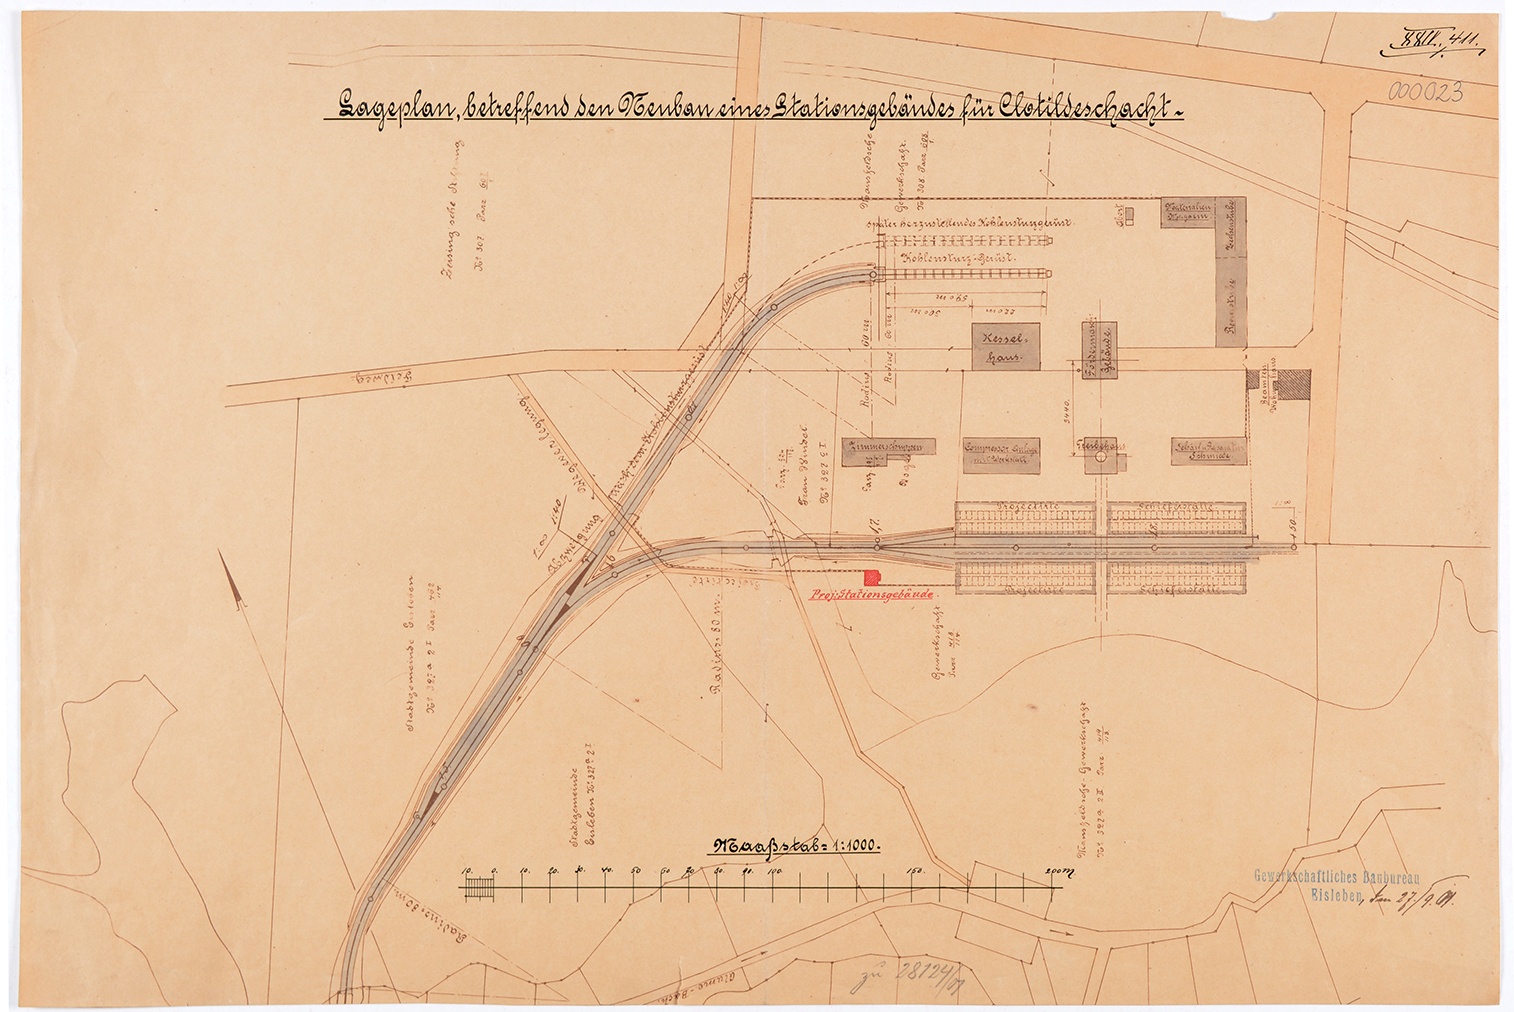 Lageplan betreffend den Neubau eines Stationsgebäudes für Clotildeschacht (Mansfeld-Museum im Humboldt-Schloss CC BY-NC-SA)